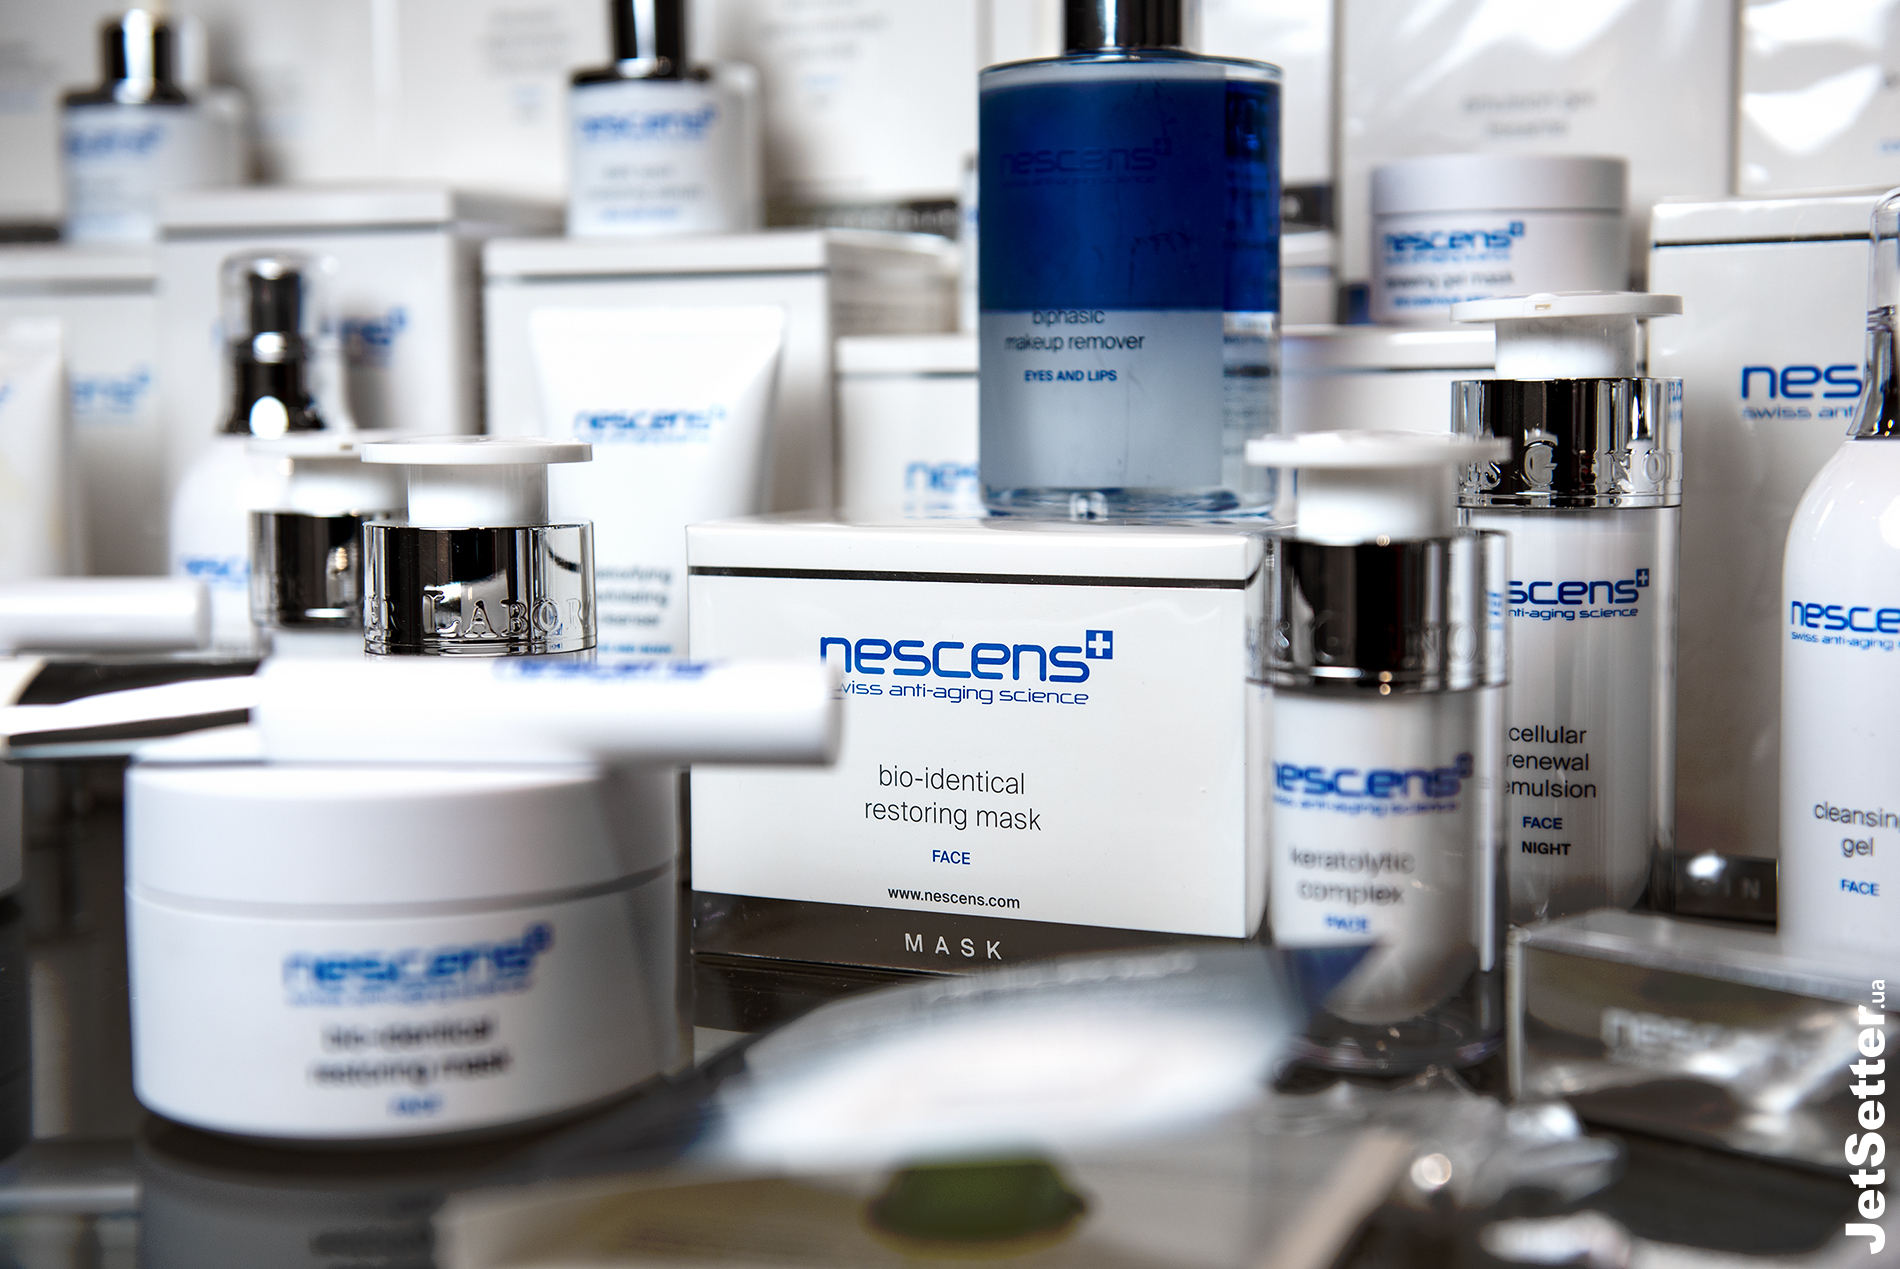 
Серед партнерів вечора — Nescens, космецевтична анти-вікова лінійка по догляду за шкірою, створена в лабораторіях всесвітньо відомих швейцарських клінік 